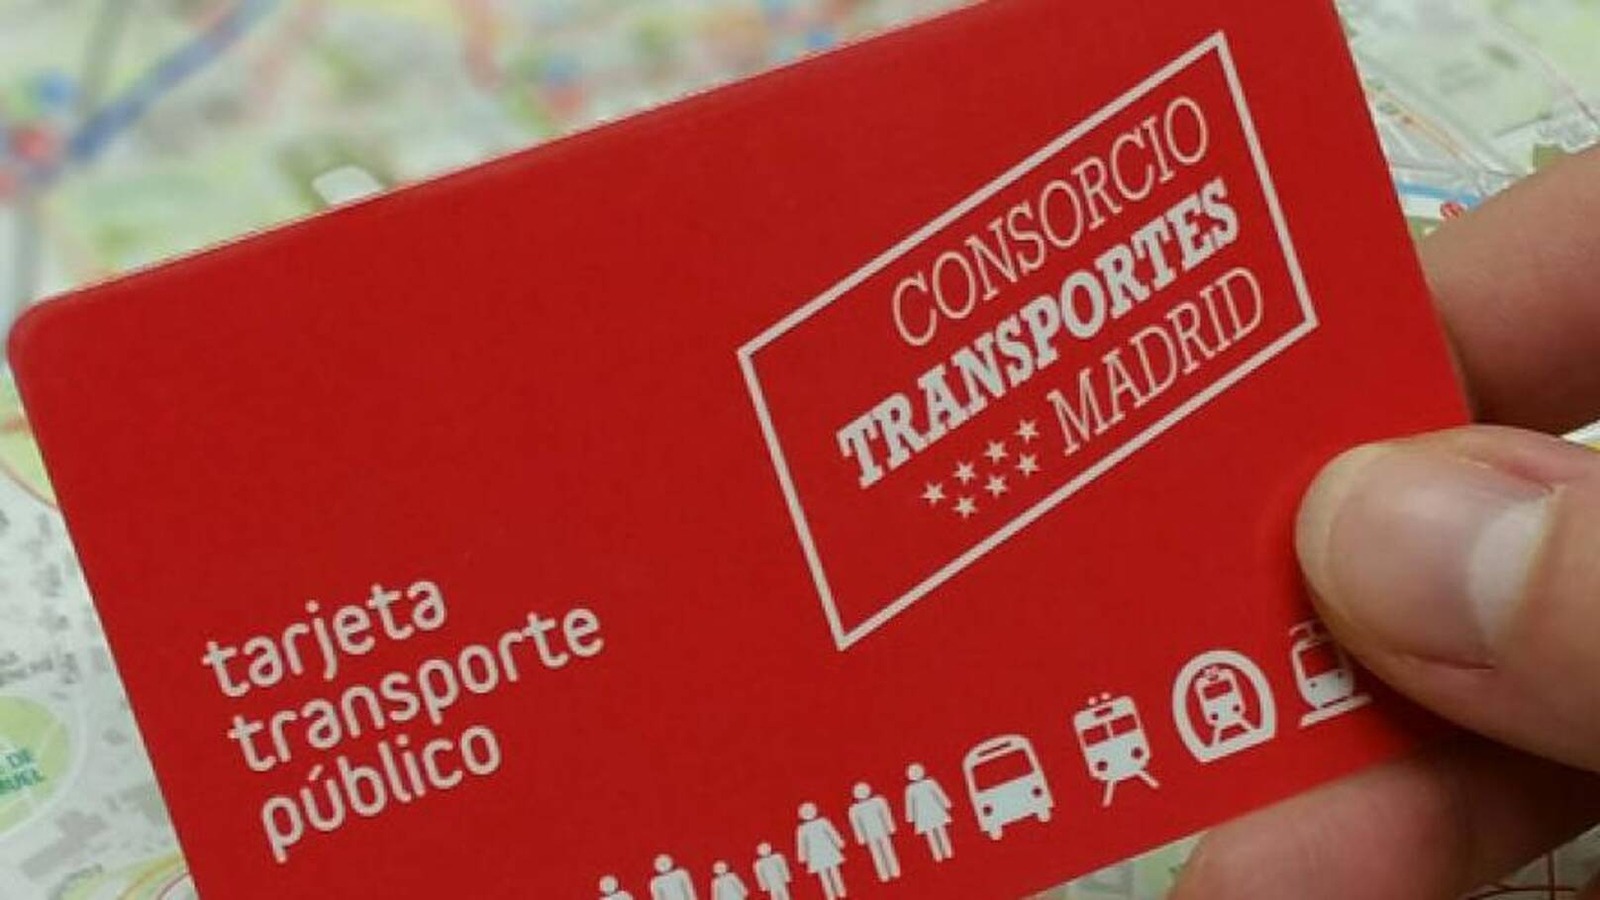 La nueva tarjeta virtual para el transporte público madrileño podría ver la luz en el año 2023